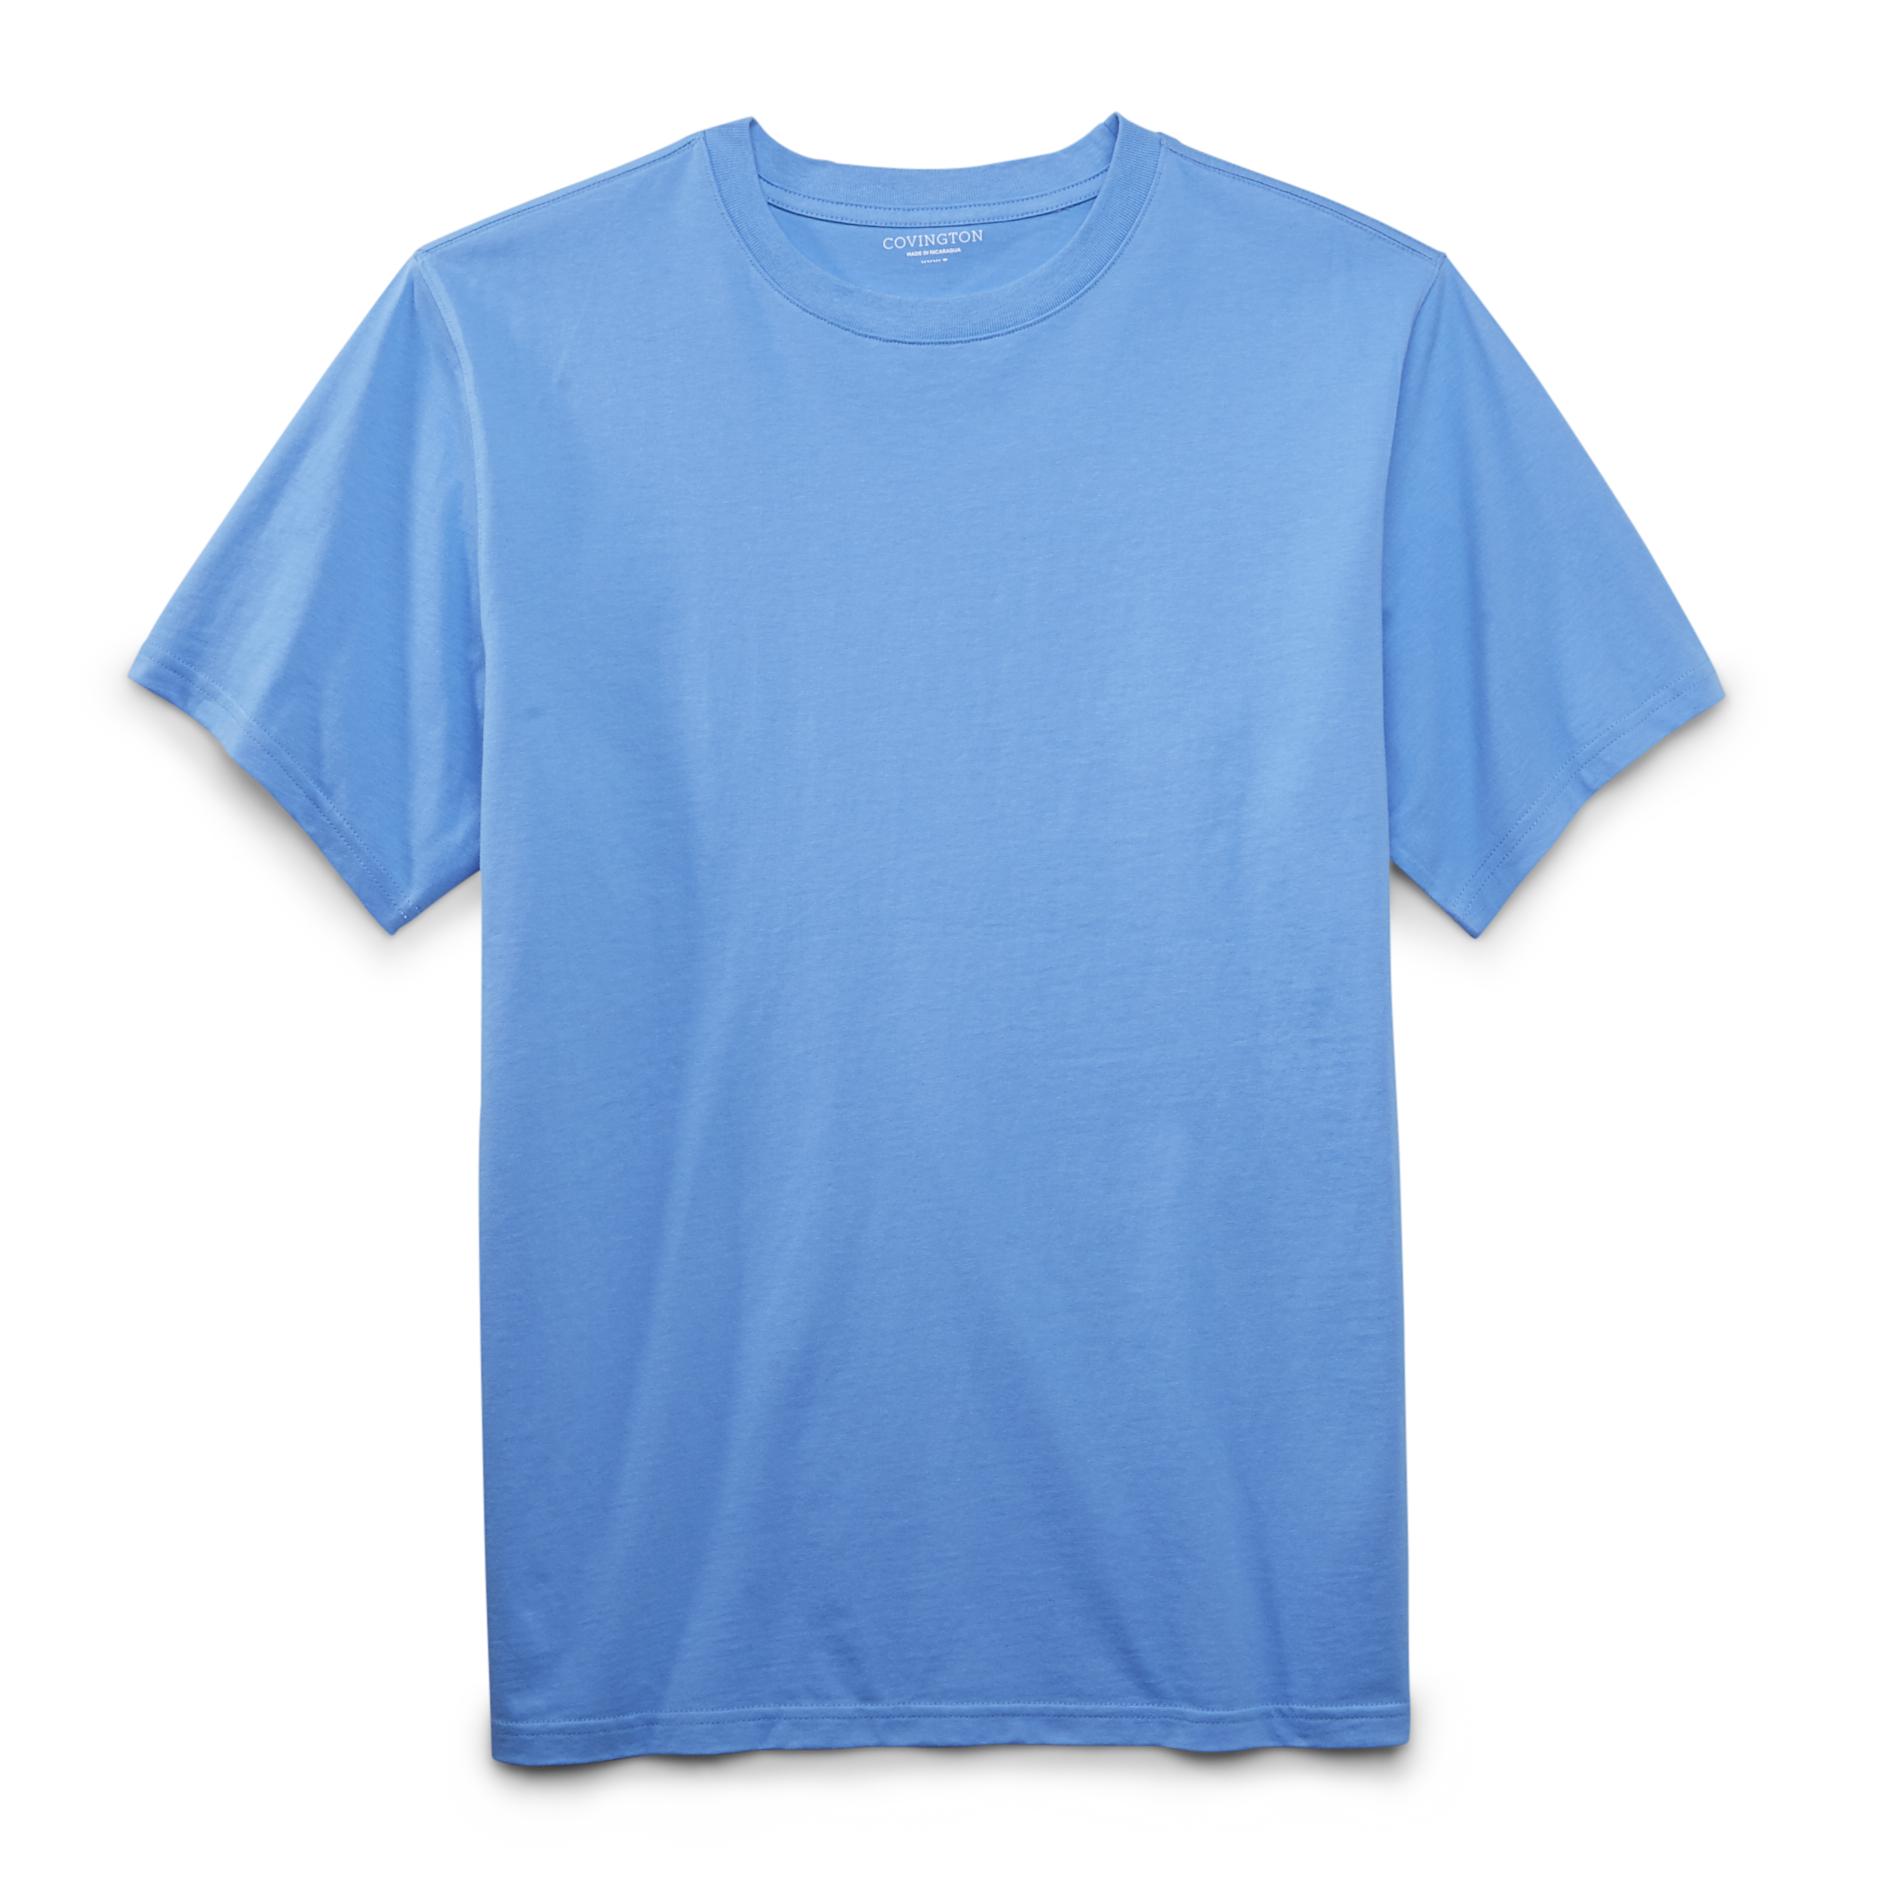 Covington Men's Cotton T-Shirt